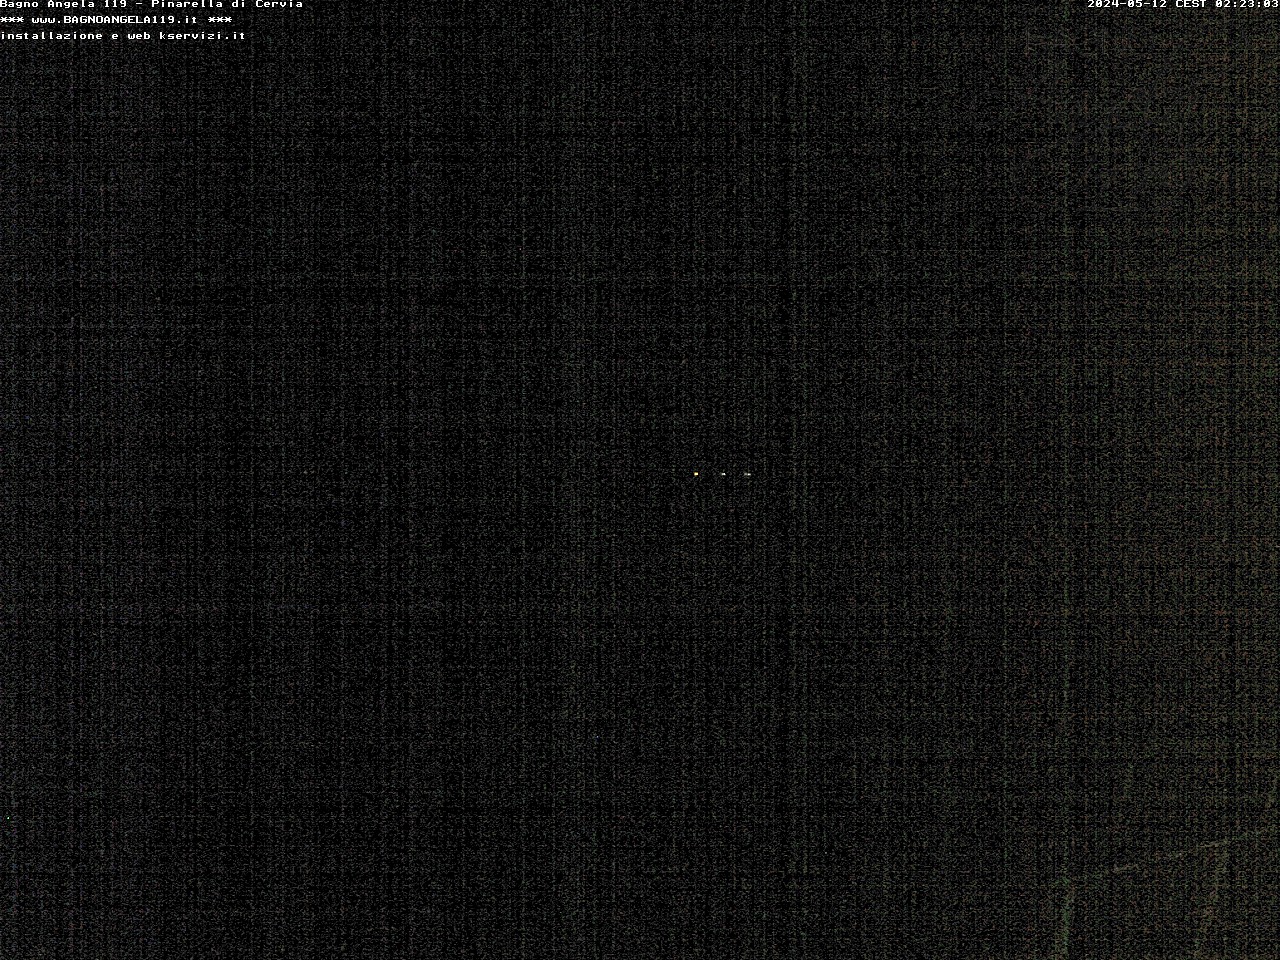 Pinarella di Cervia Mer. 02:24